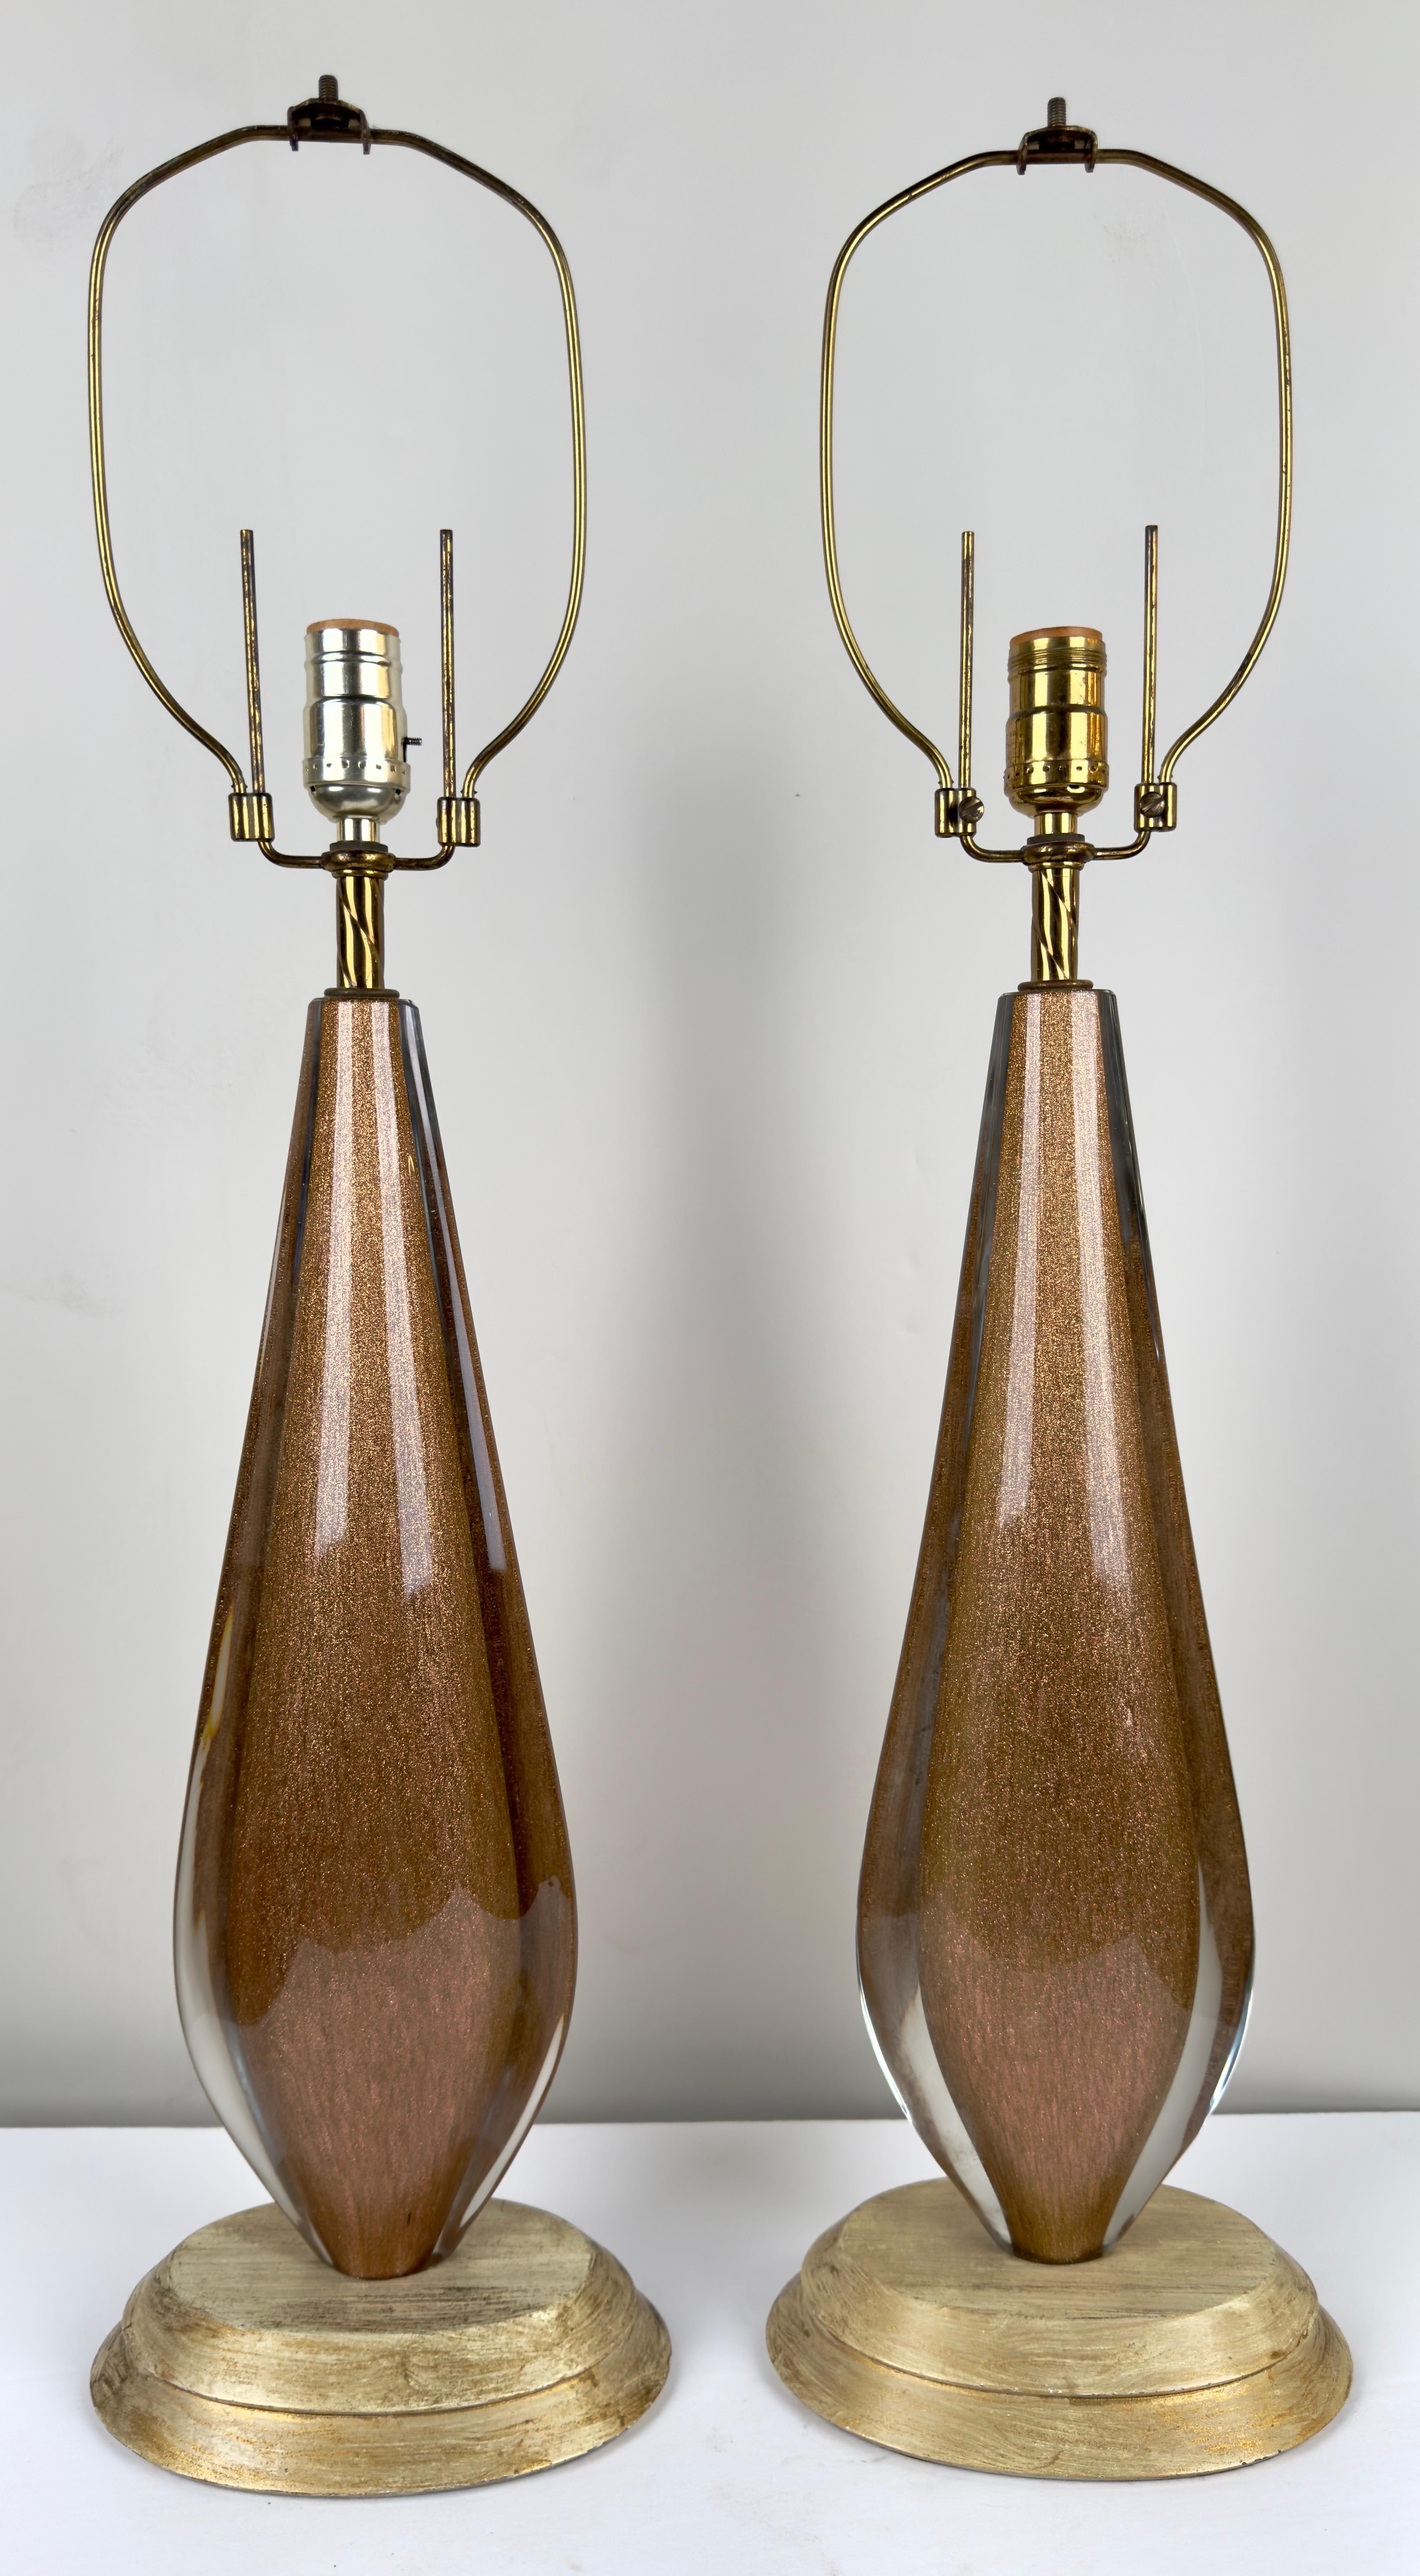  Ein faszinierendes Paar Mid Century Modern Tischlampen. Gefertigt aus Kunstglas mit goldenen Maserungen, die im Glas zu tanzen scheinen, strahlen diese Lampen eine zeitlose Eleganz und Faszination aus.

Die geschwungenen, opulenten und glänzenden